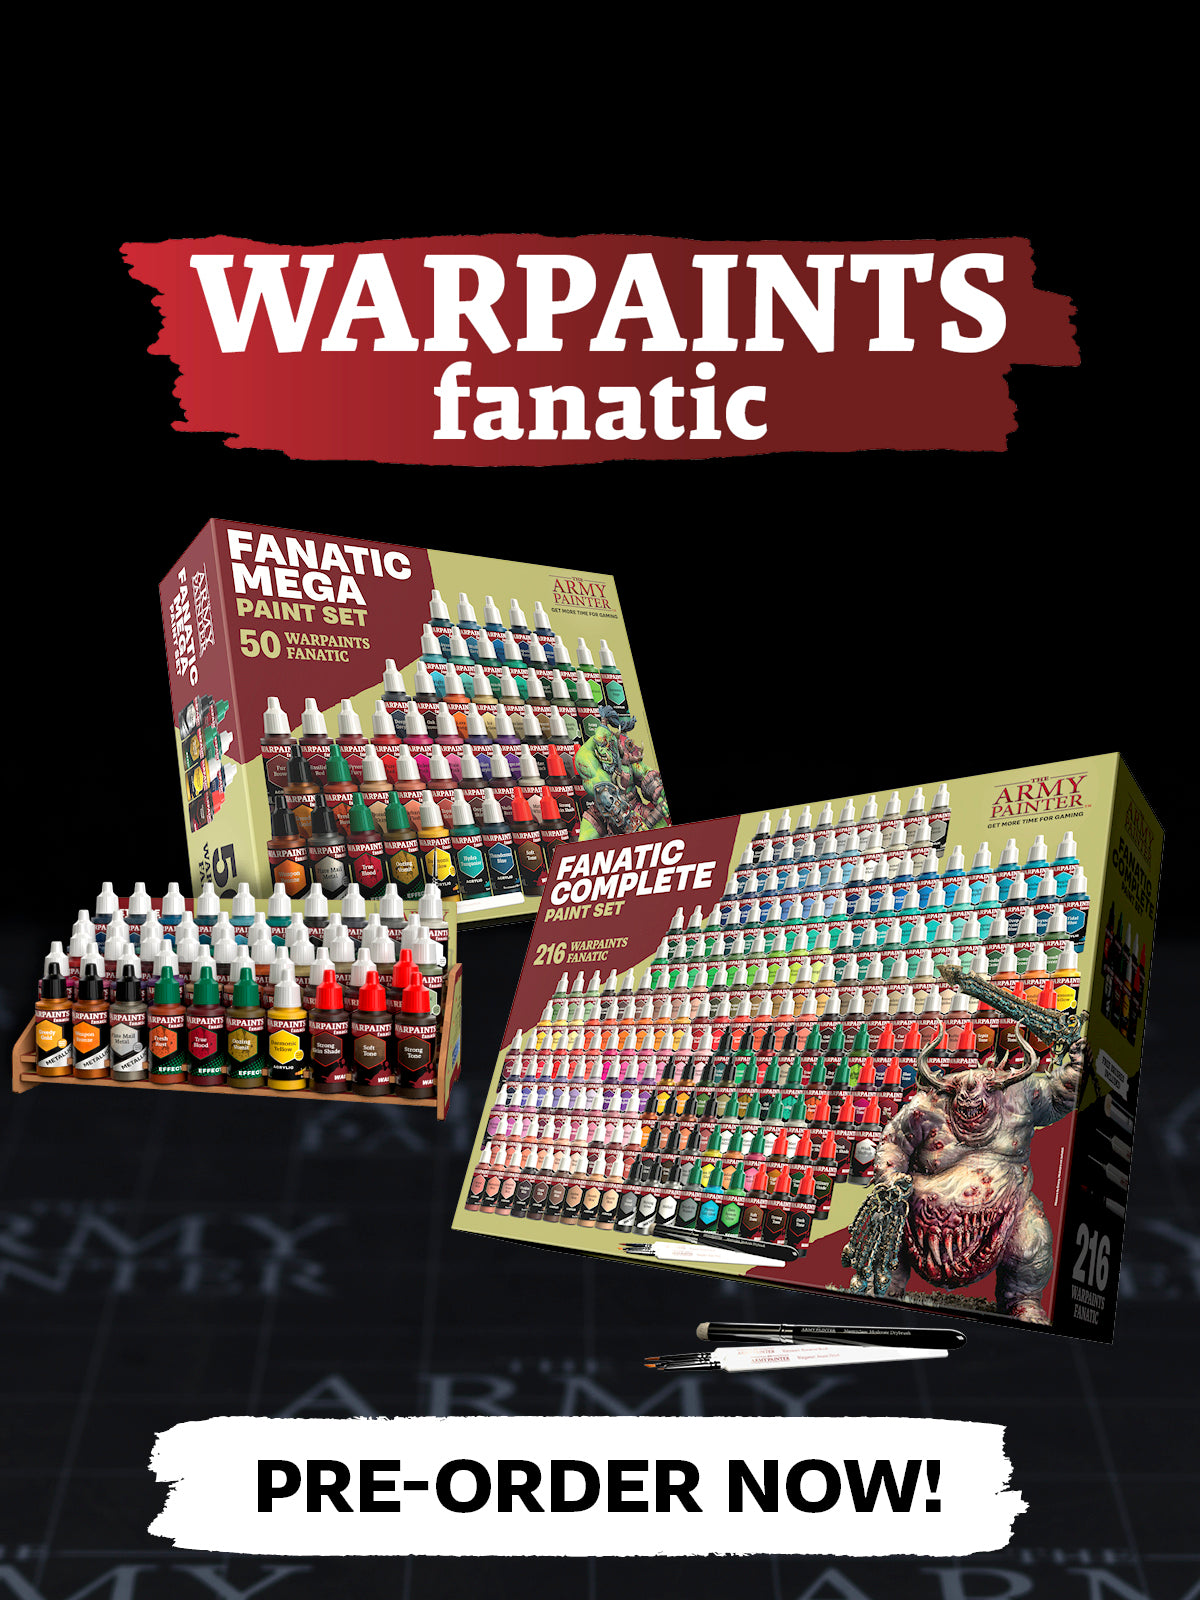 Army Painter - Complete Paint Set, Sets de base de la gamme army pa